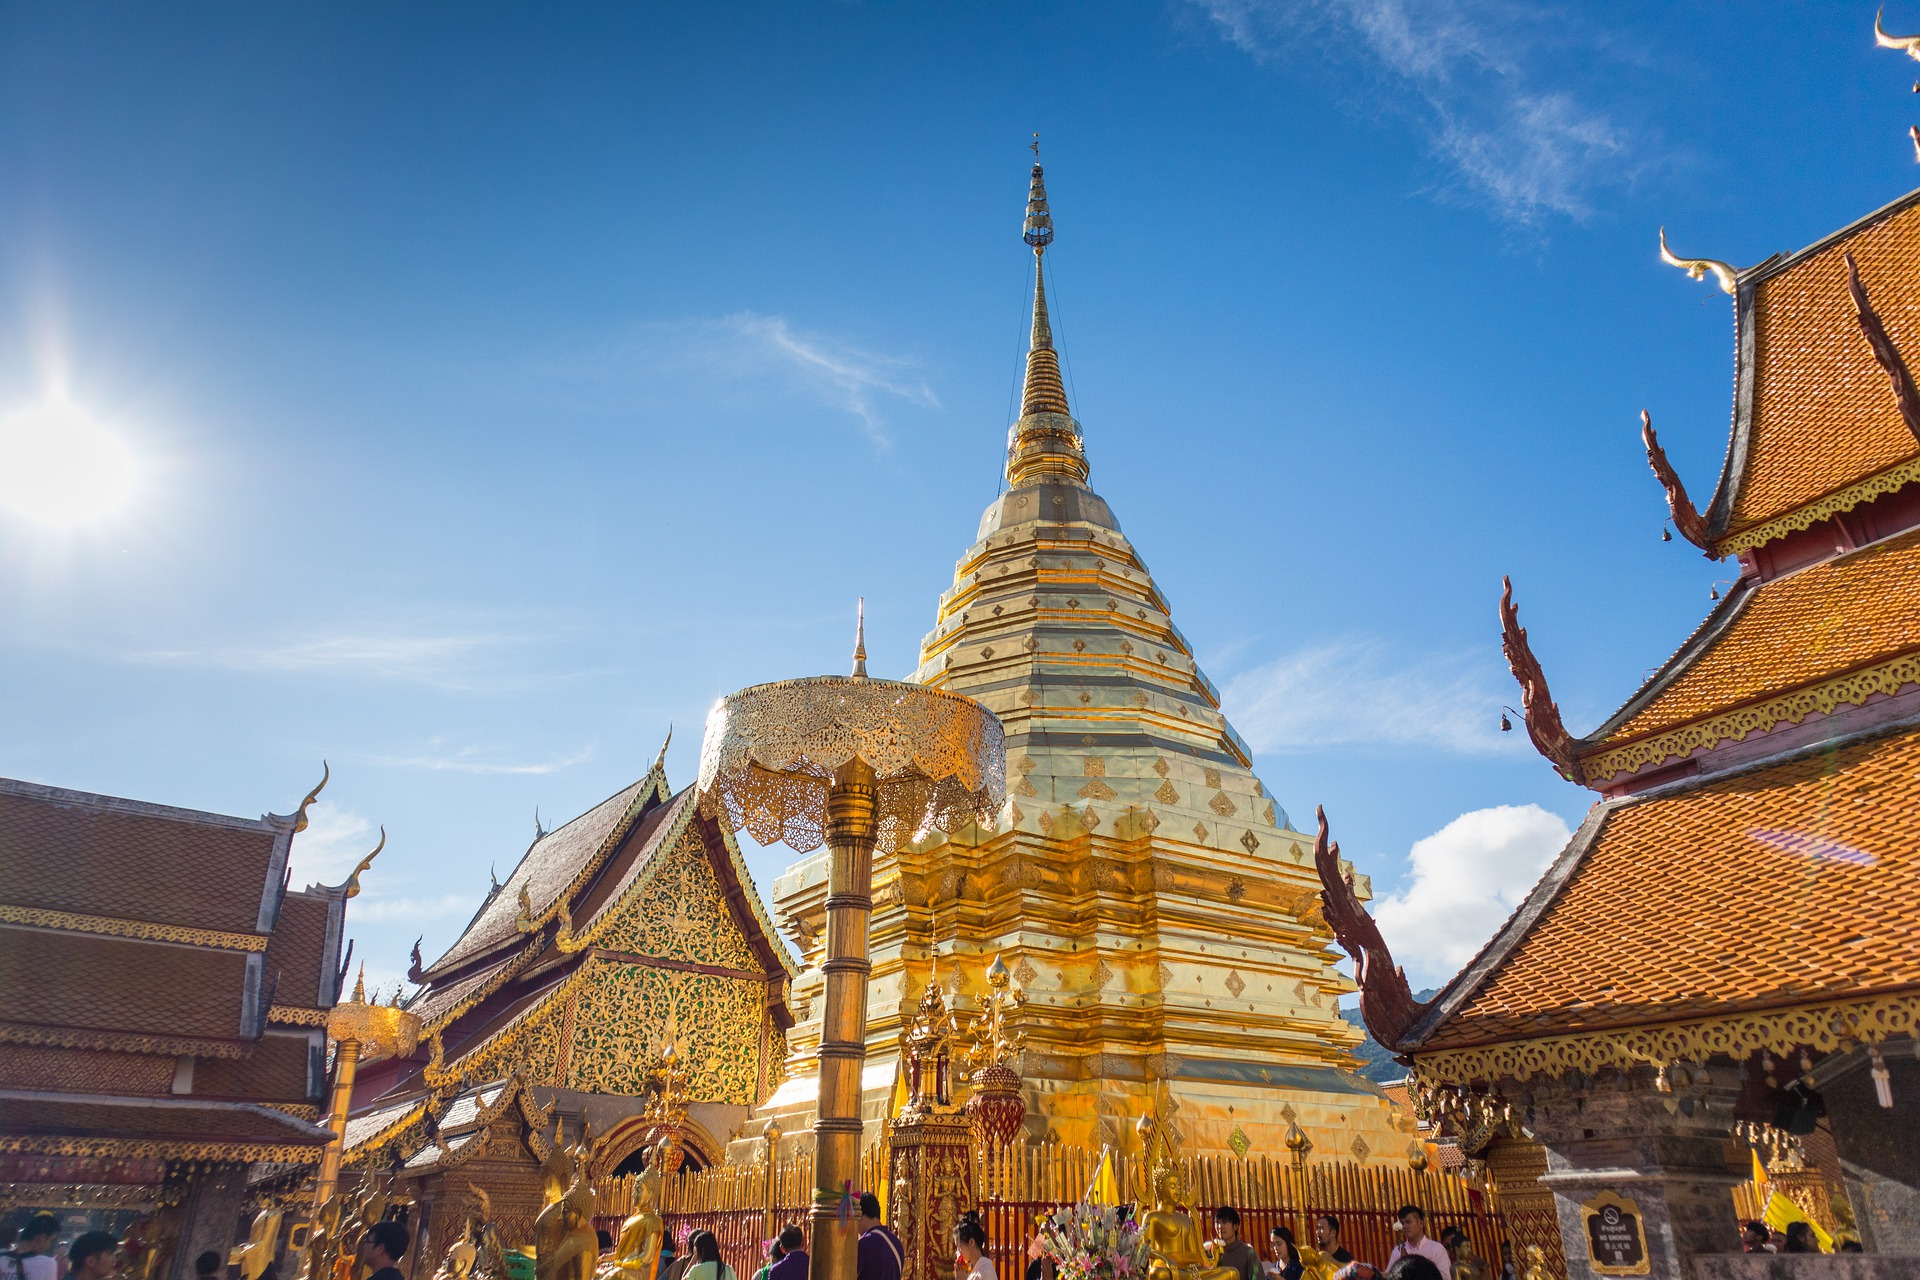 Cheap flights to Chiang Mai